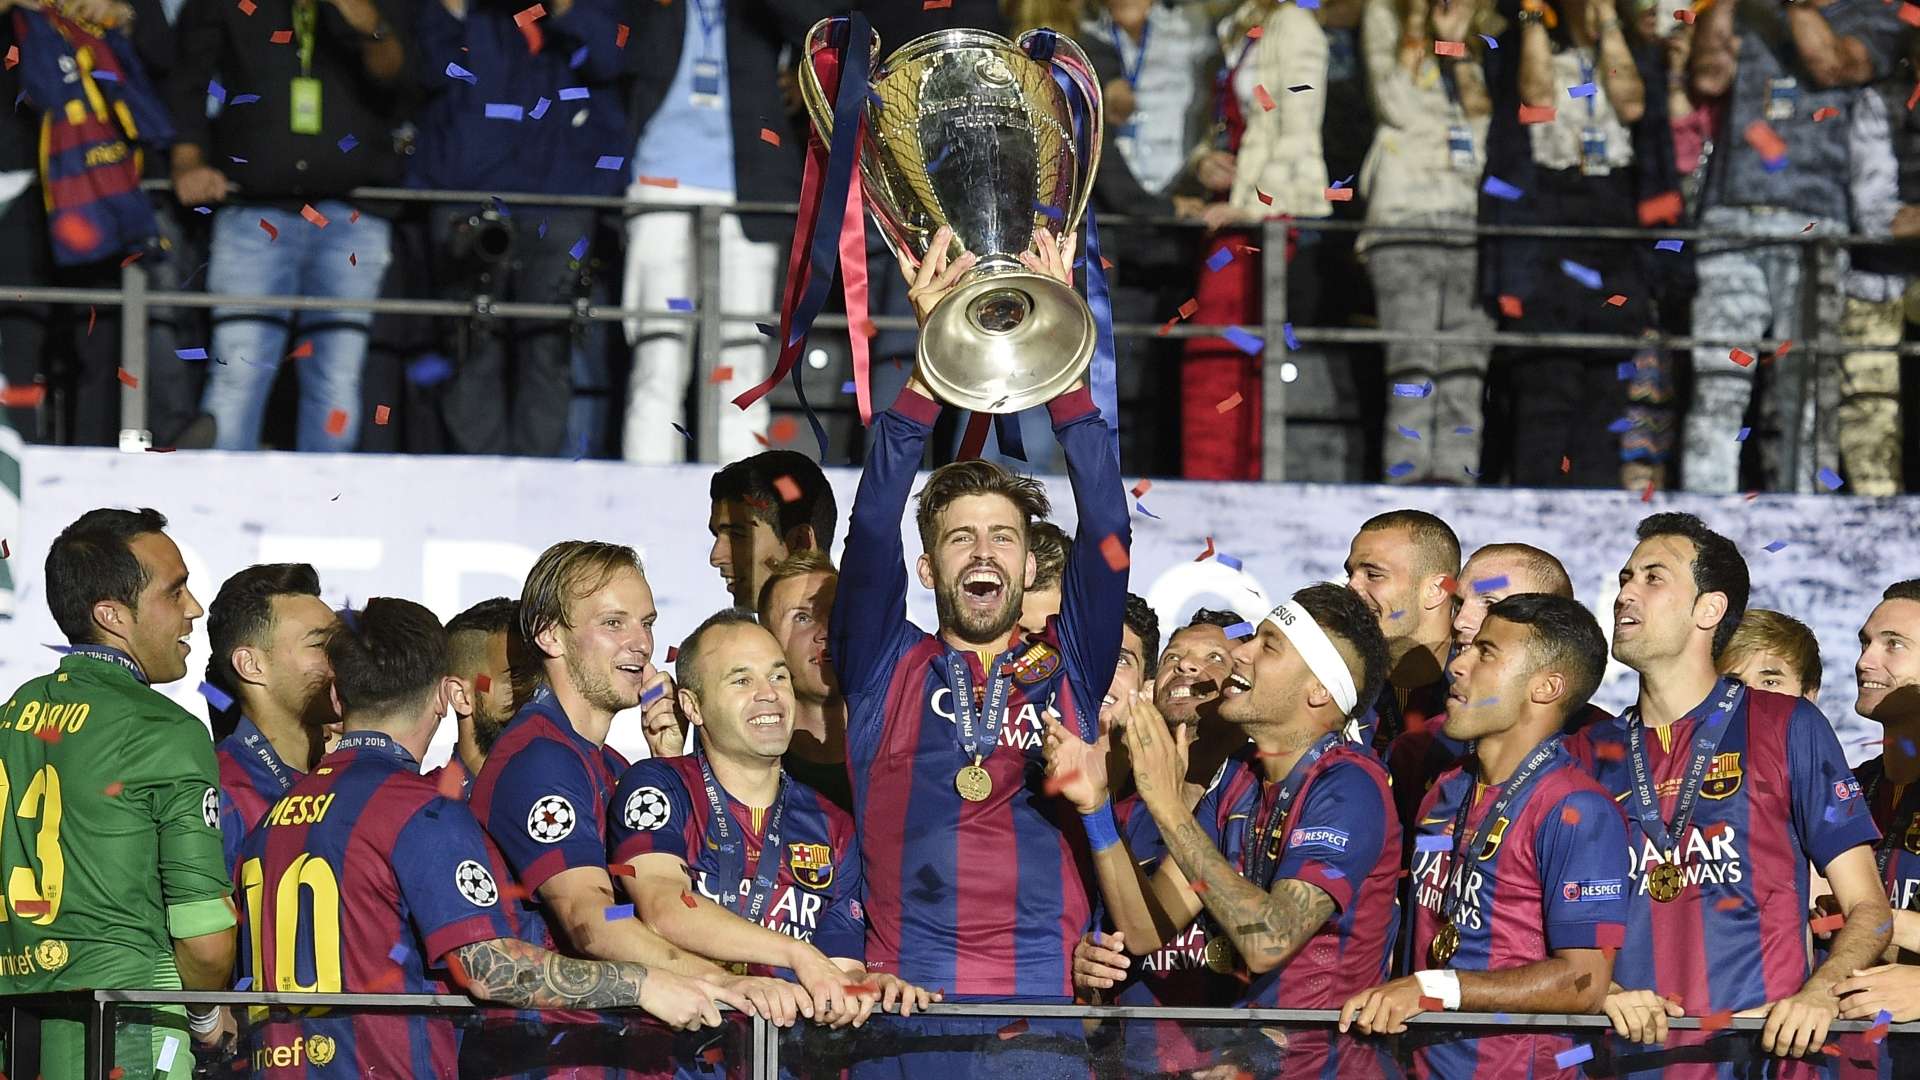 Gerard Pique Barcelona Champions League trophy 2014-15